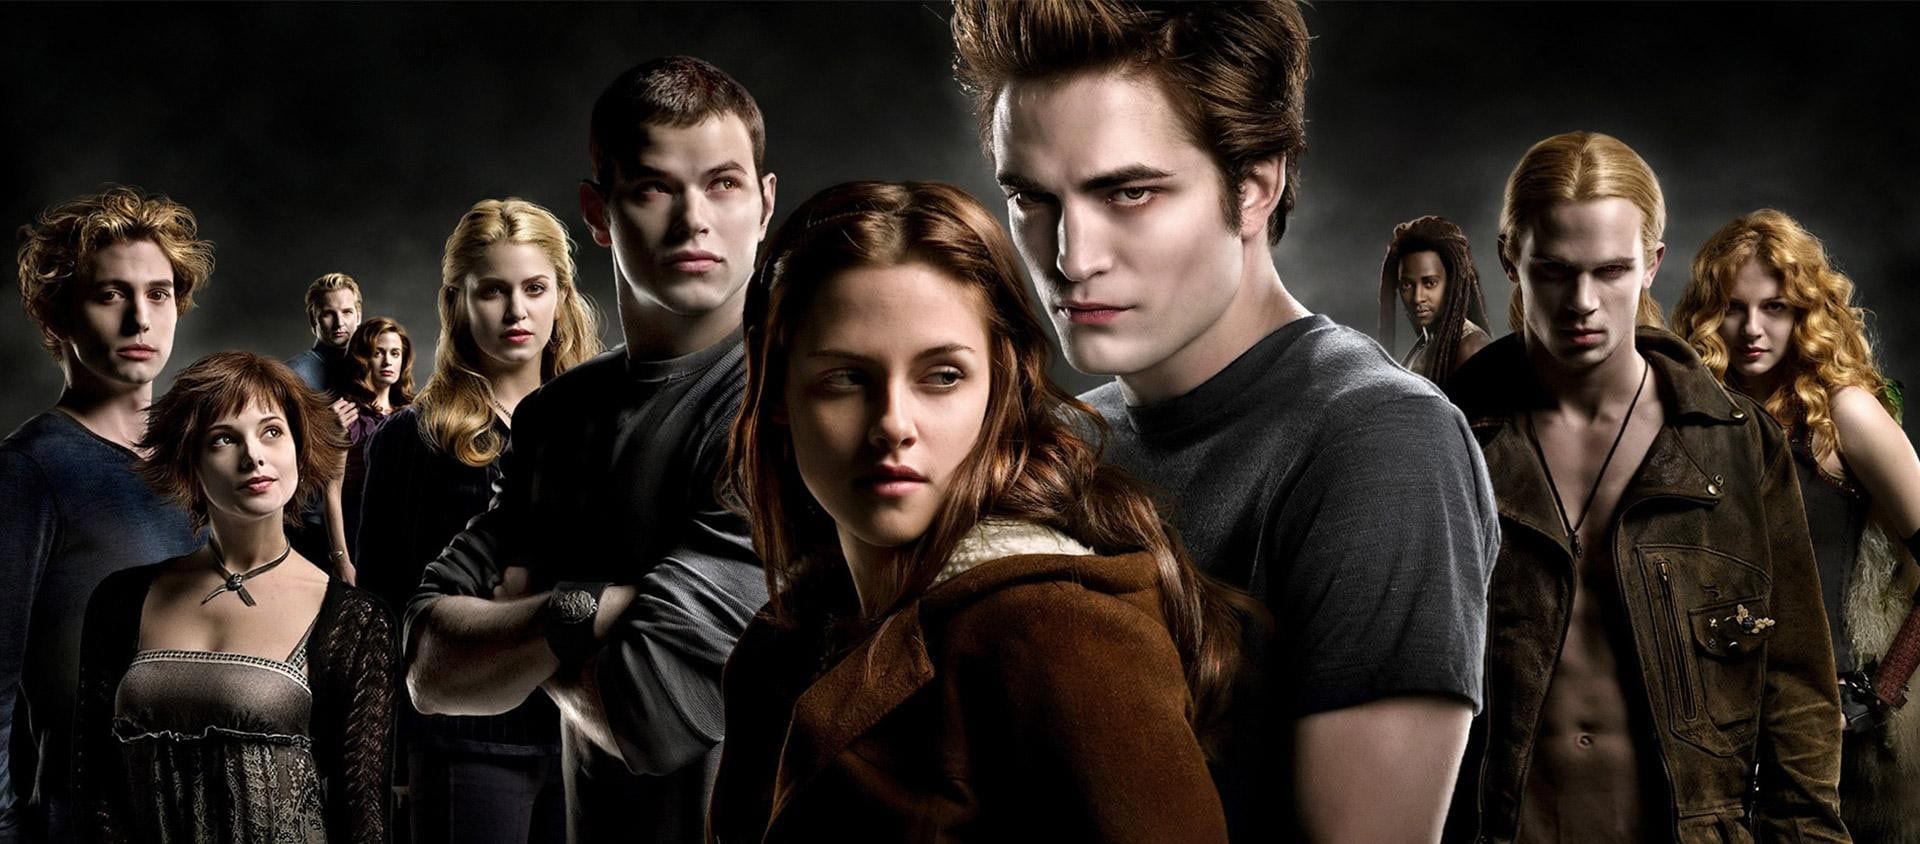 Twilight: Italia 1 propone l'intera saga a partire da Venerdì